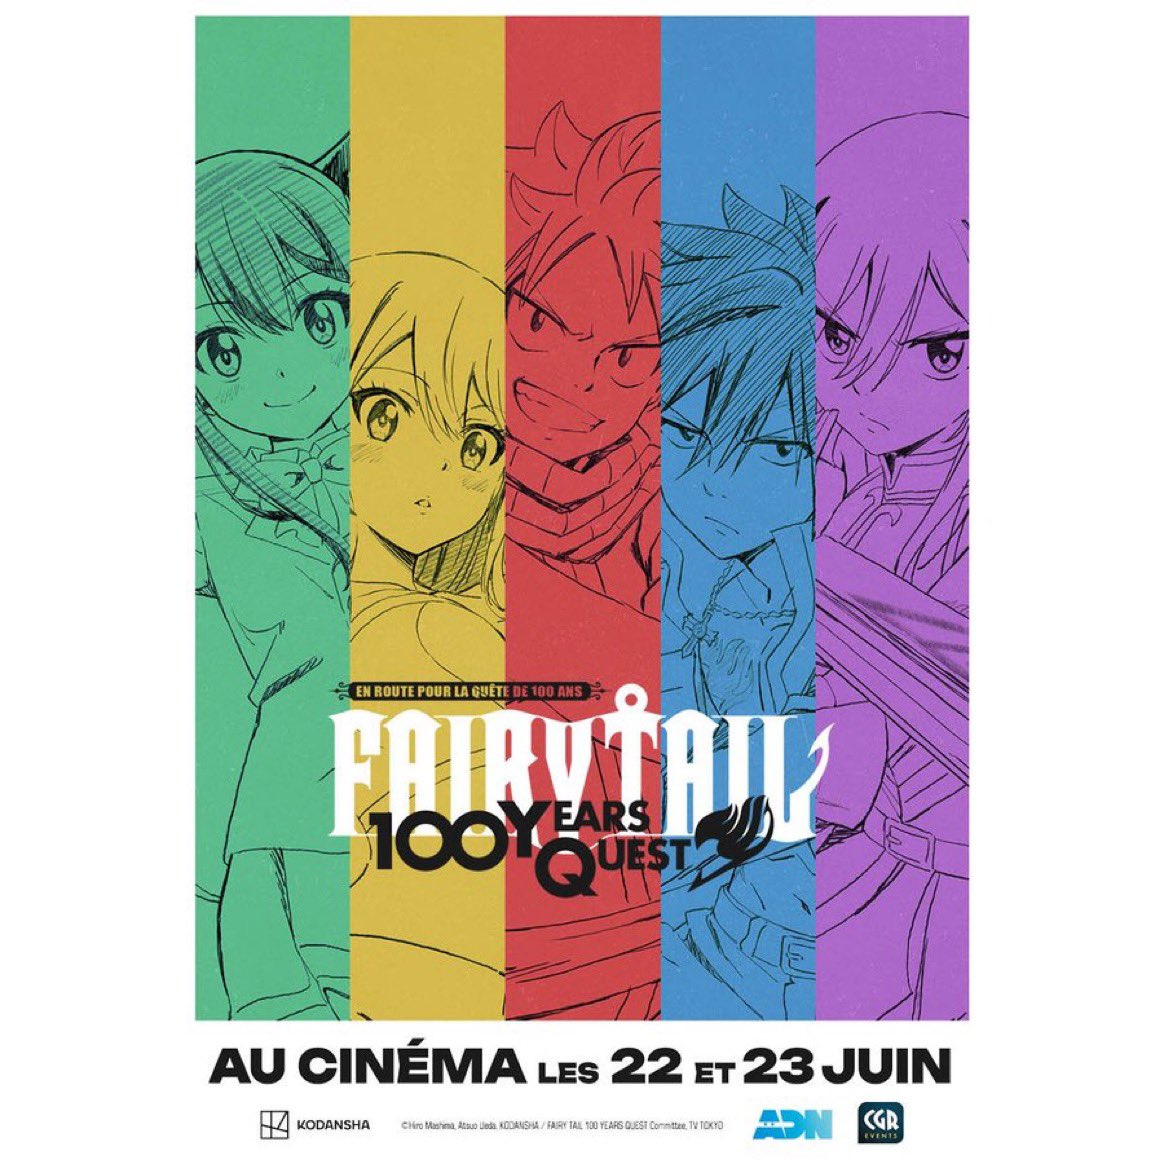 L’anime Fairy Tail : 100 Years Quest arrive en avant-première en France au cinéma grâce à @ADNanime et @CGR_Events Retrouvez les samedi 22 et dimanche 23 juin, les trois premiers épisodes diffusés en exclusivité sur grand écran ! La Billetterie ouvrira le 30 mai à 16 h.